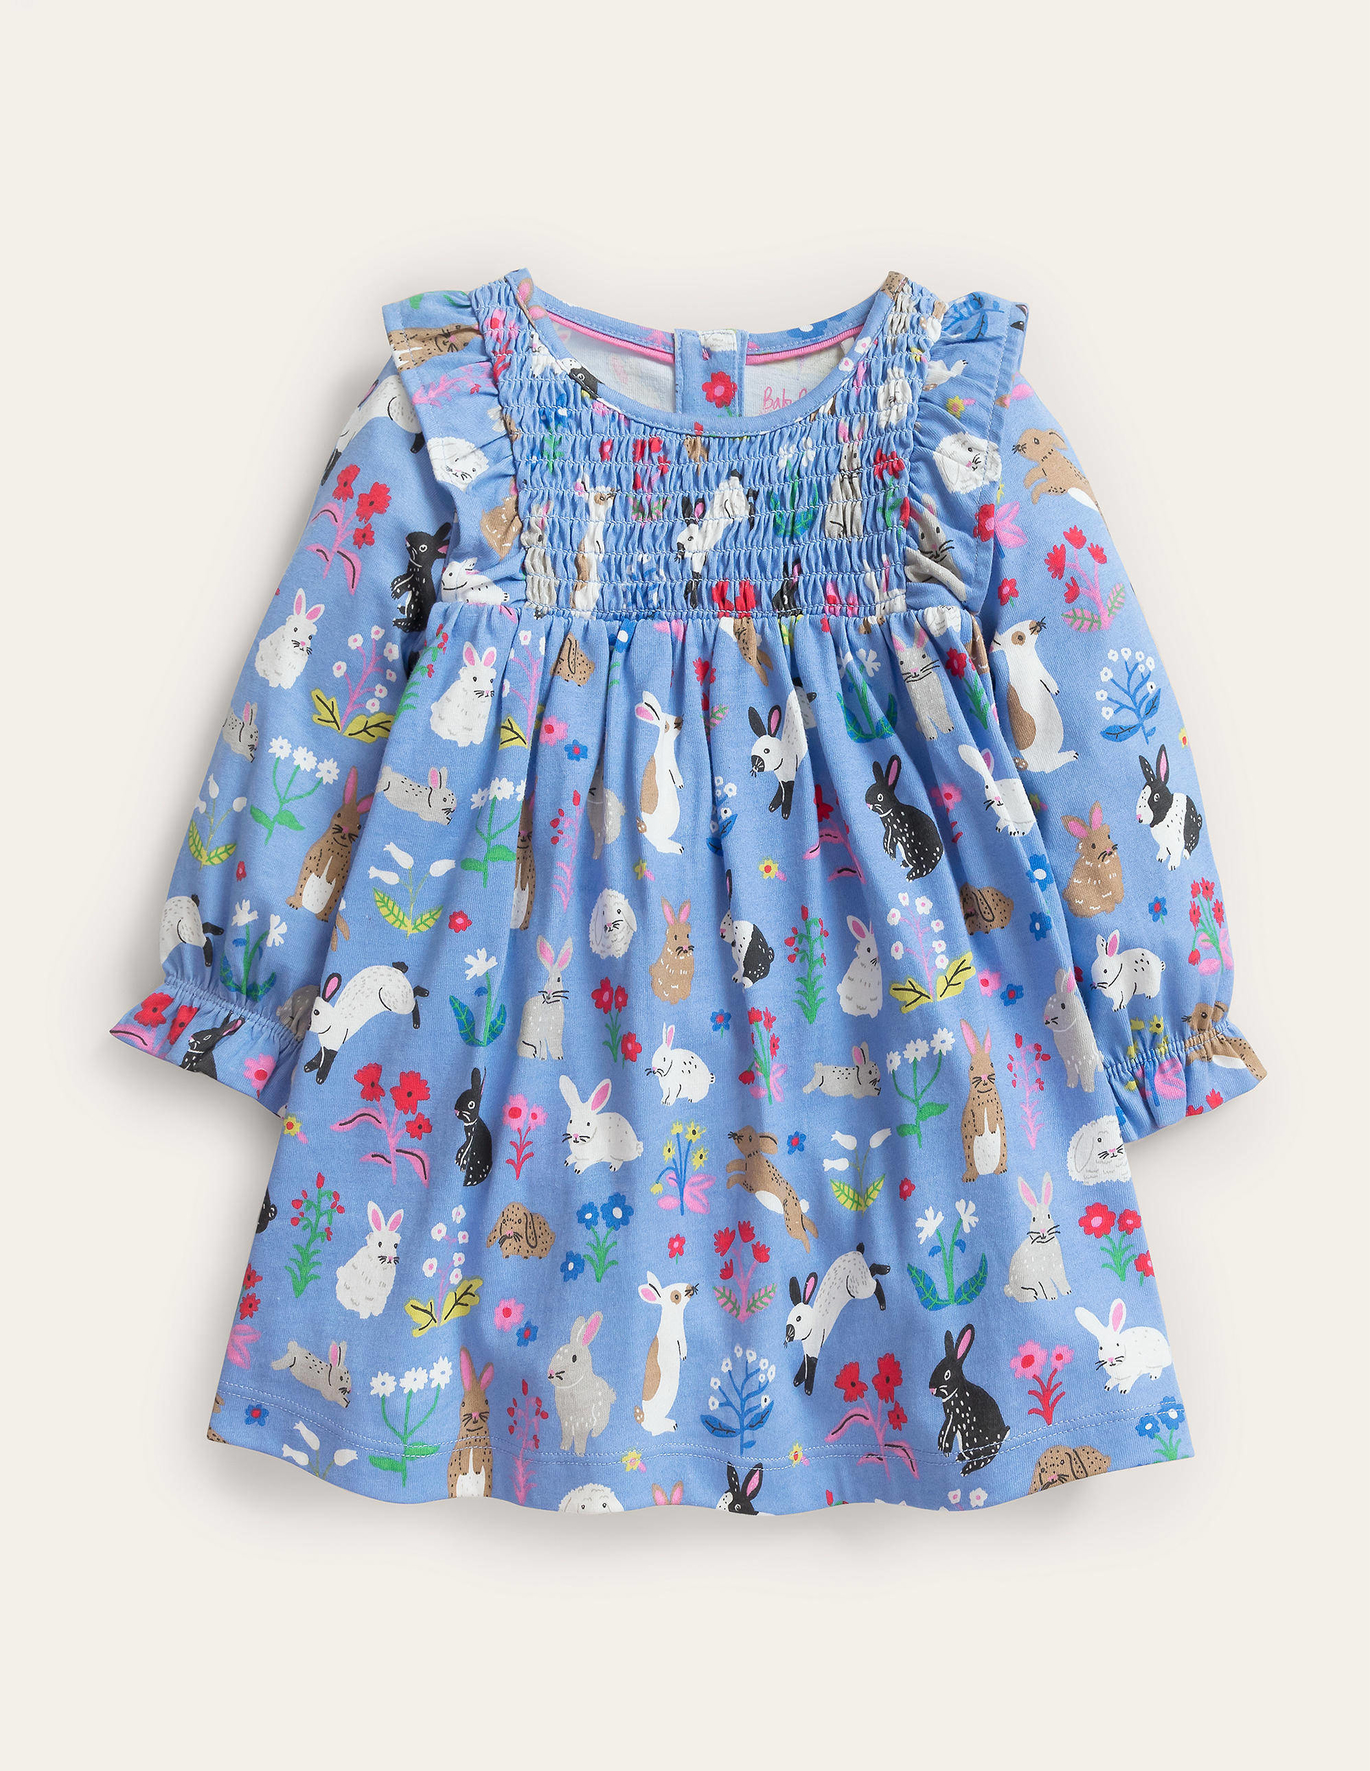 Boden Printed Jersey Dress - Vista Blue Bunnies